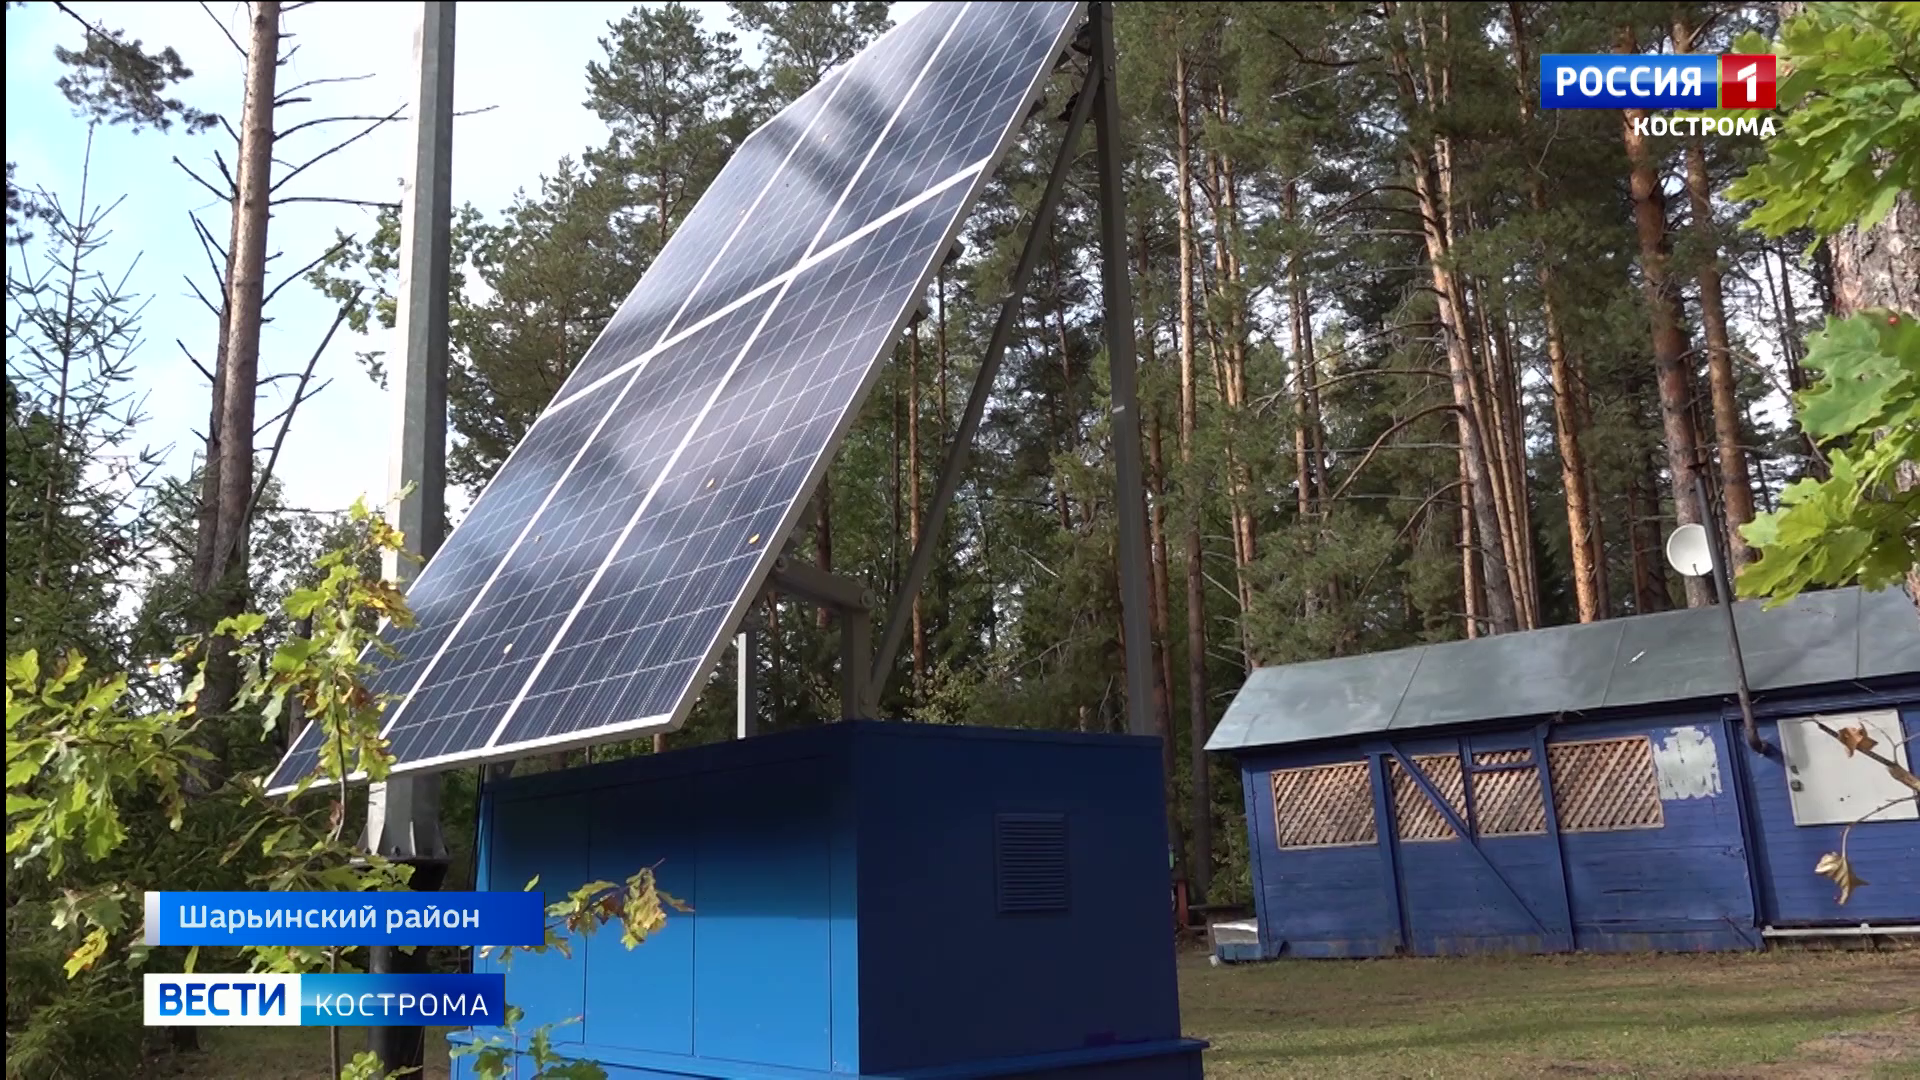 Первую в Костромской области электростанцию на солнечных батареях установили в шарьинских лесах